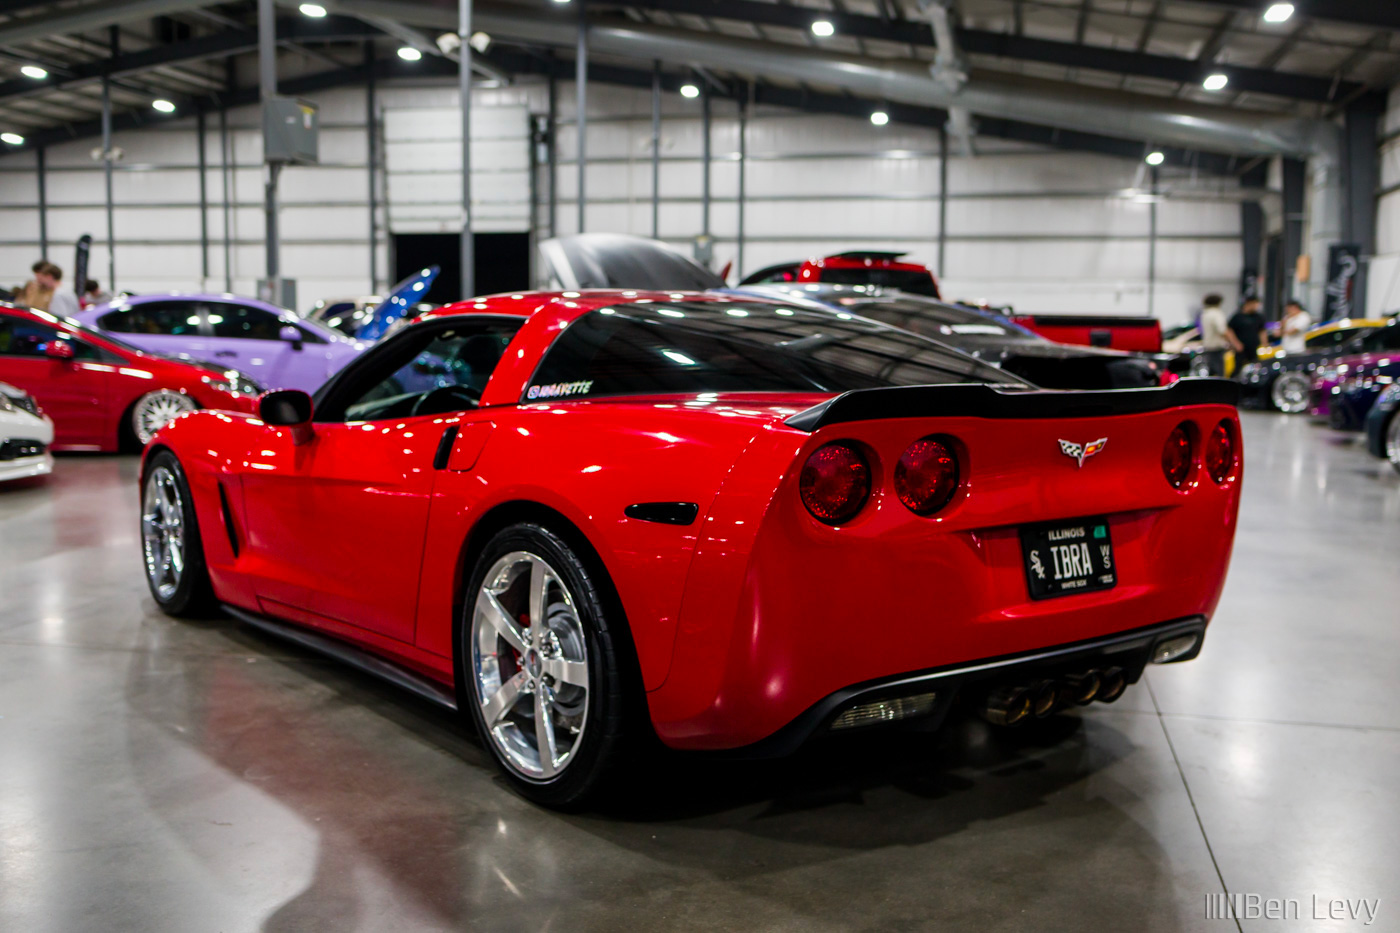 Rear Quarter of Red C6 Corvette